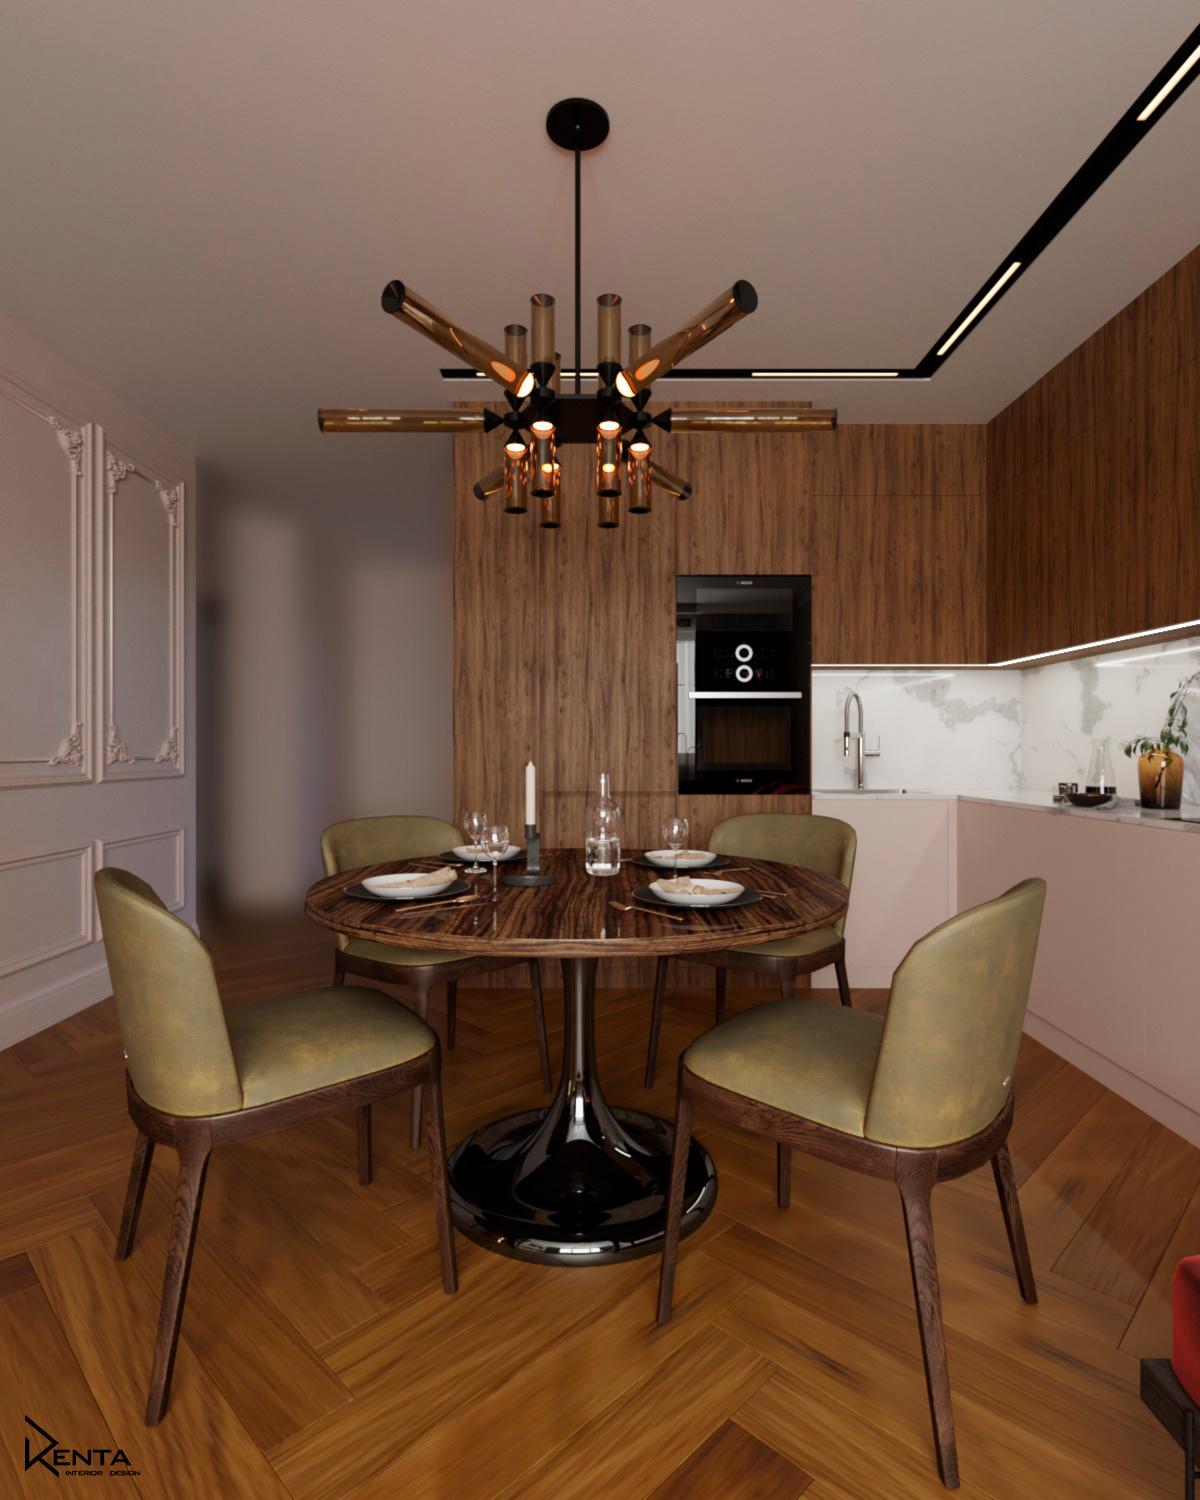 дизайн дизайн интерьера кухня кухня-гостиная ремонт интерьер визуализация Визуализация интерьера современный дизайн рендер